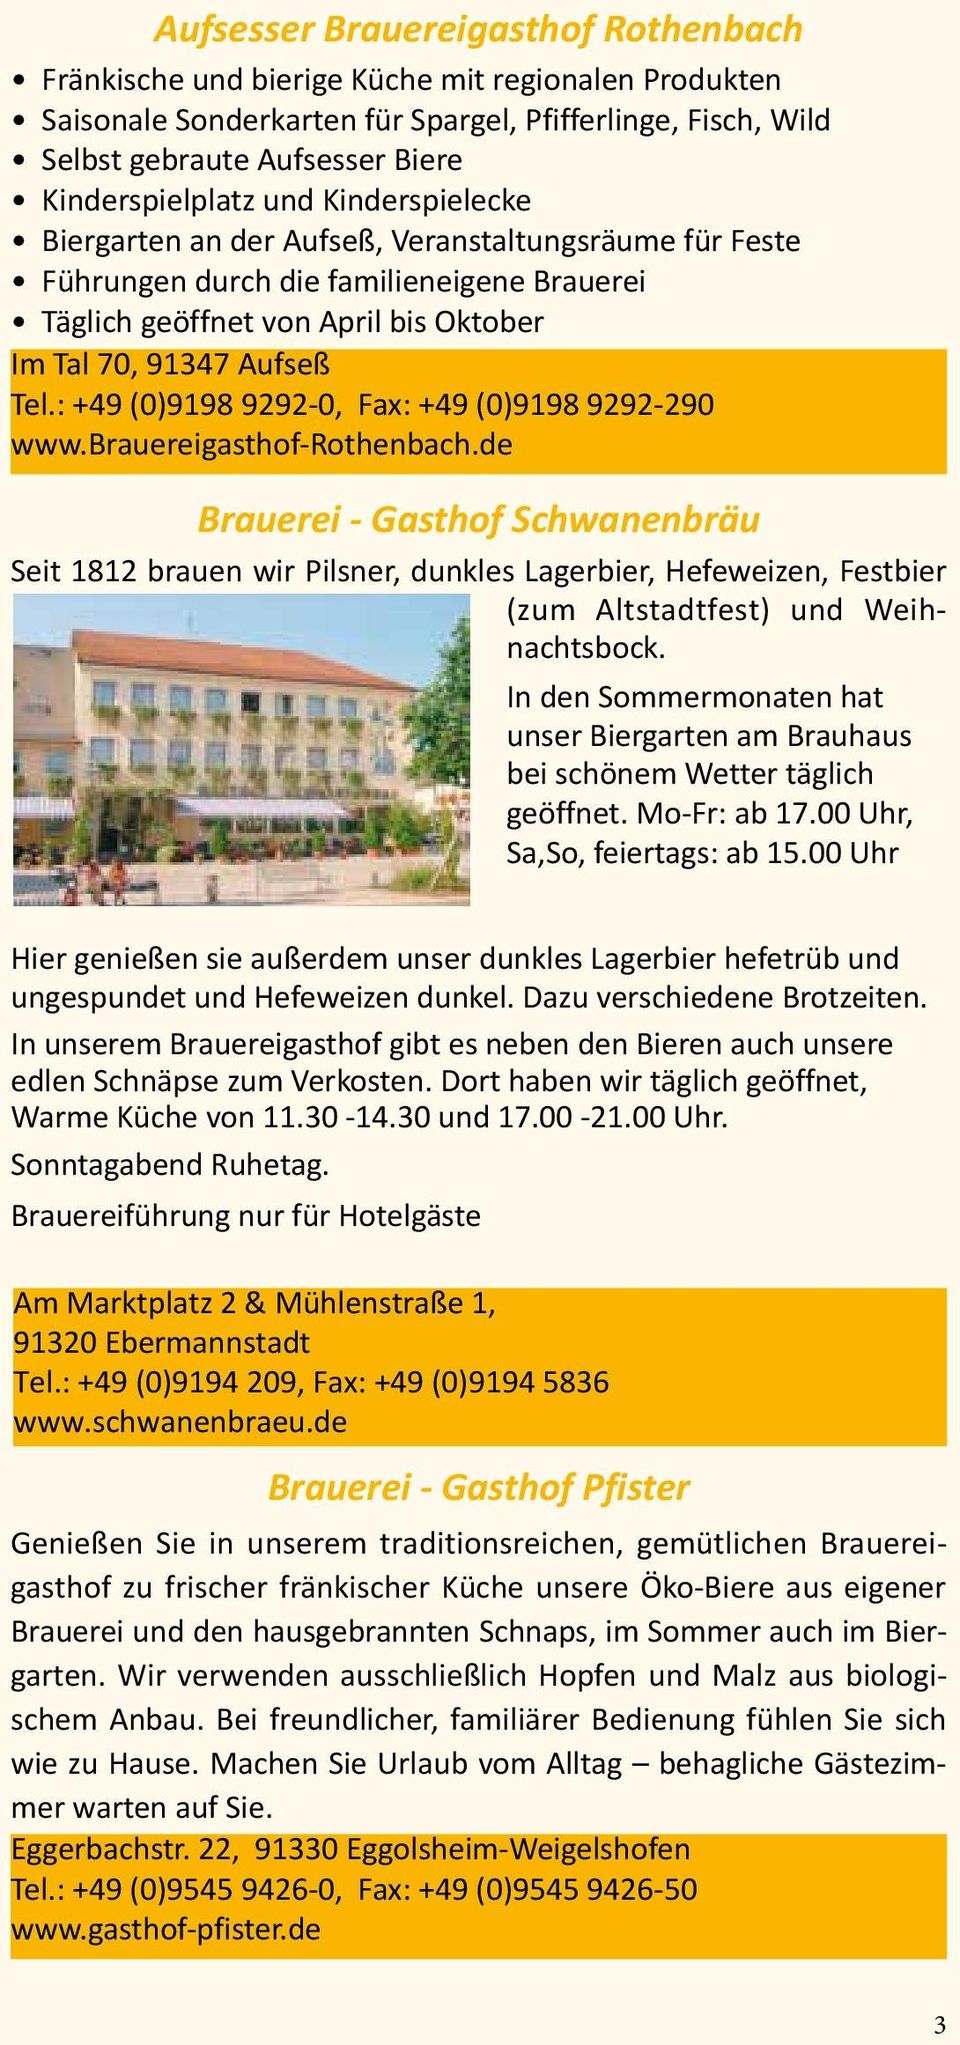 Tel.: +49 (0)9198 9292-0, Fax: +49 (0)9198 9292-290 www.brauereigasthof-rothenbach.